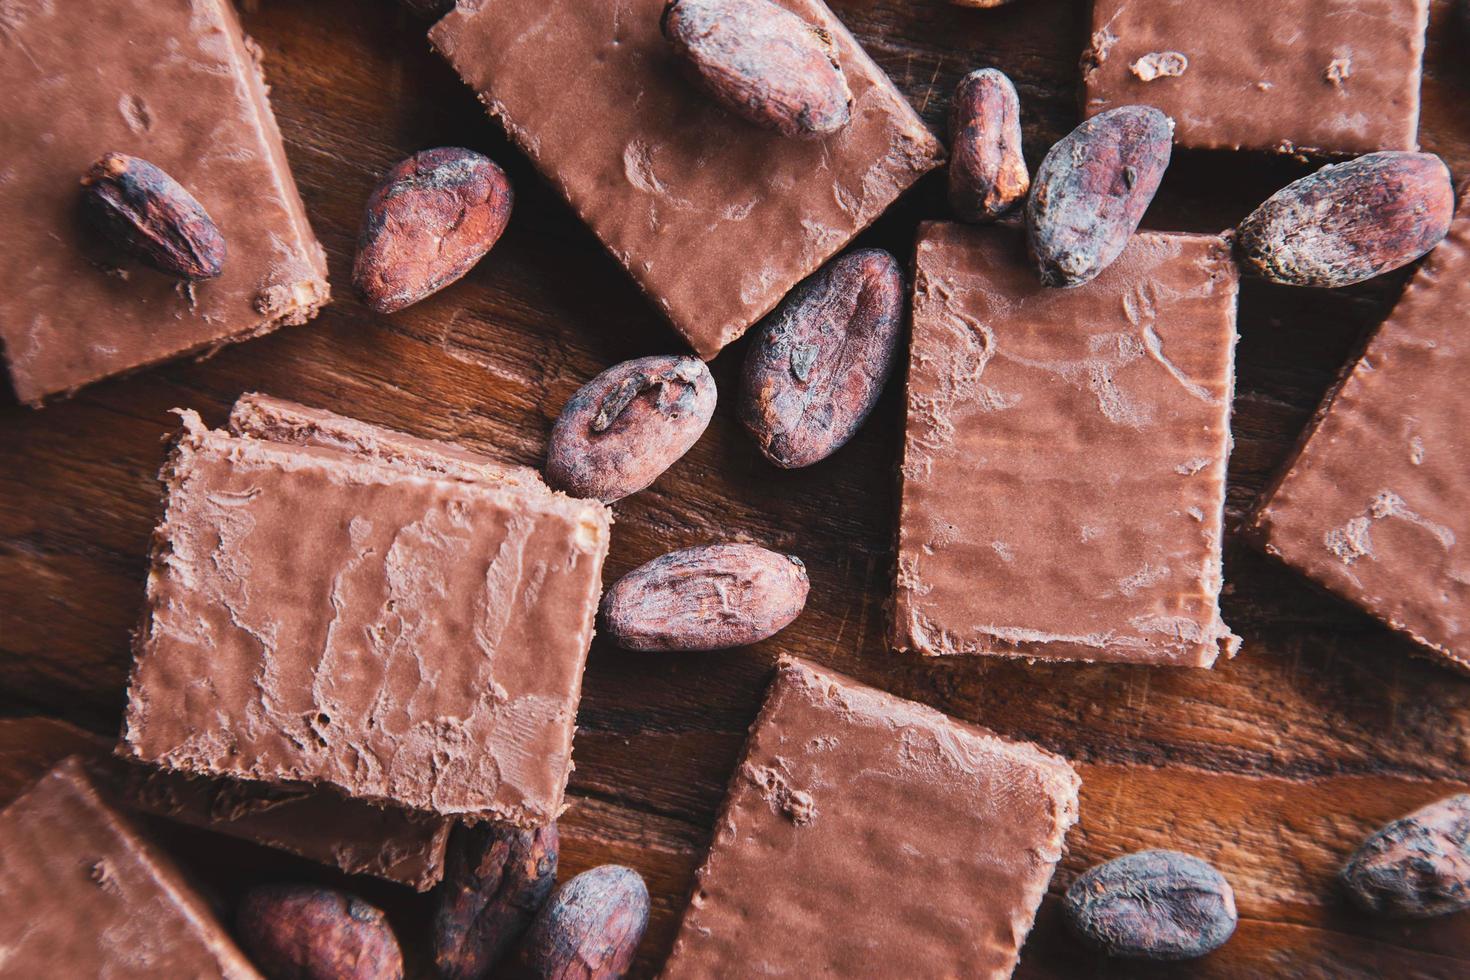 Granos de chocolate y cacao con cacao sobre un fondo negro foto